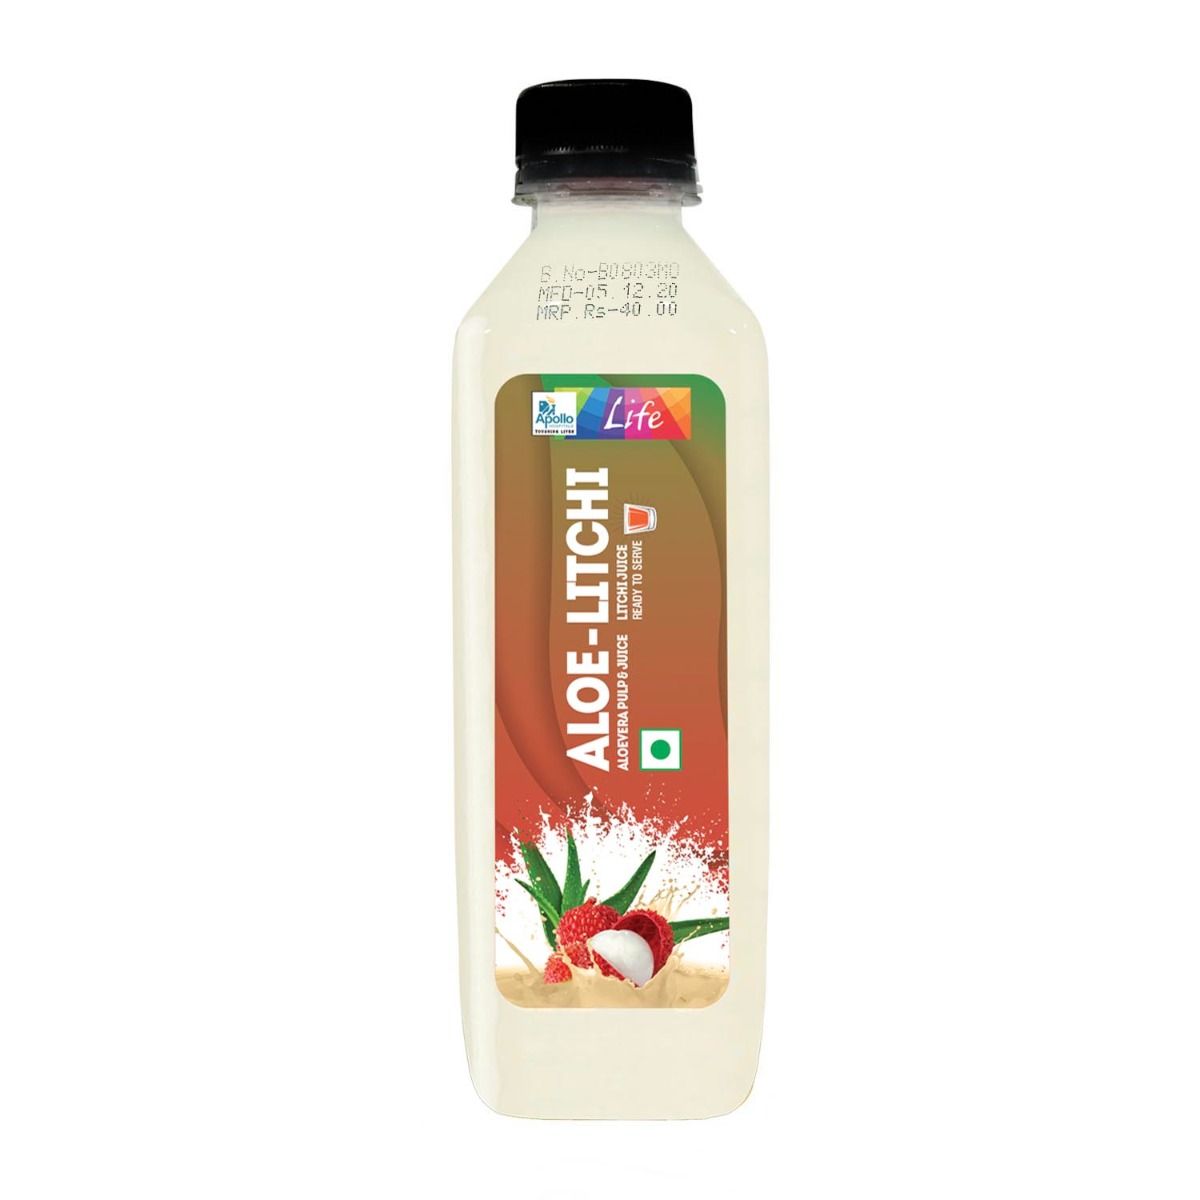 Apollo Life Aloe-Litchi Juice, 300 ml, Pack of 1 